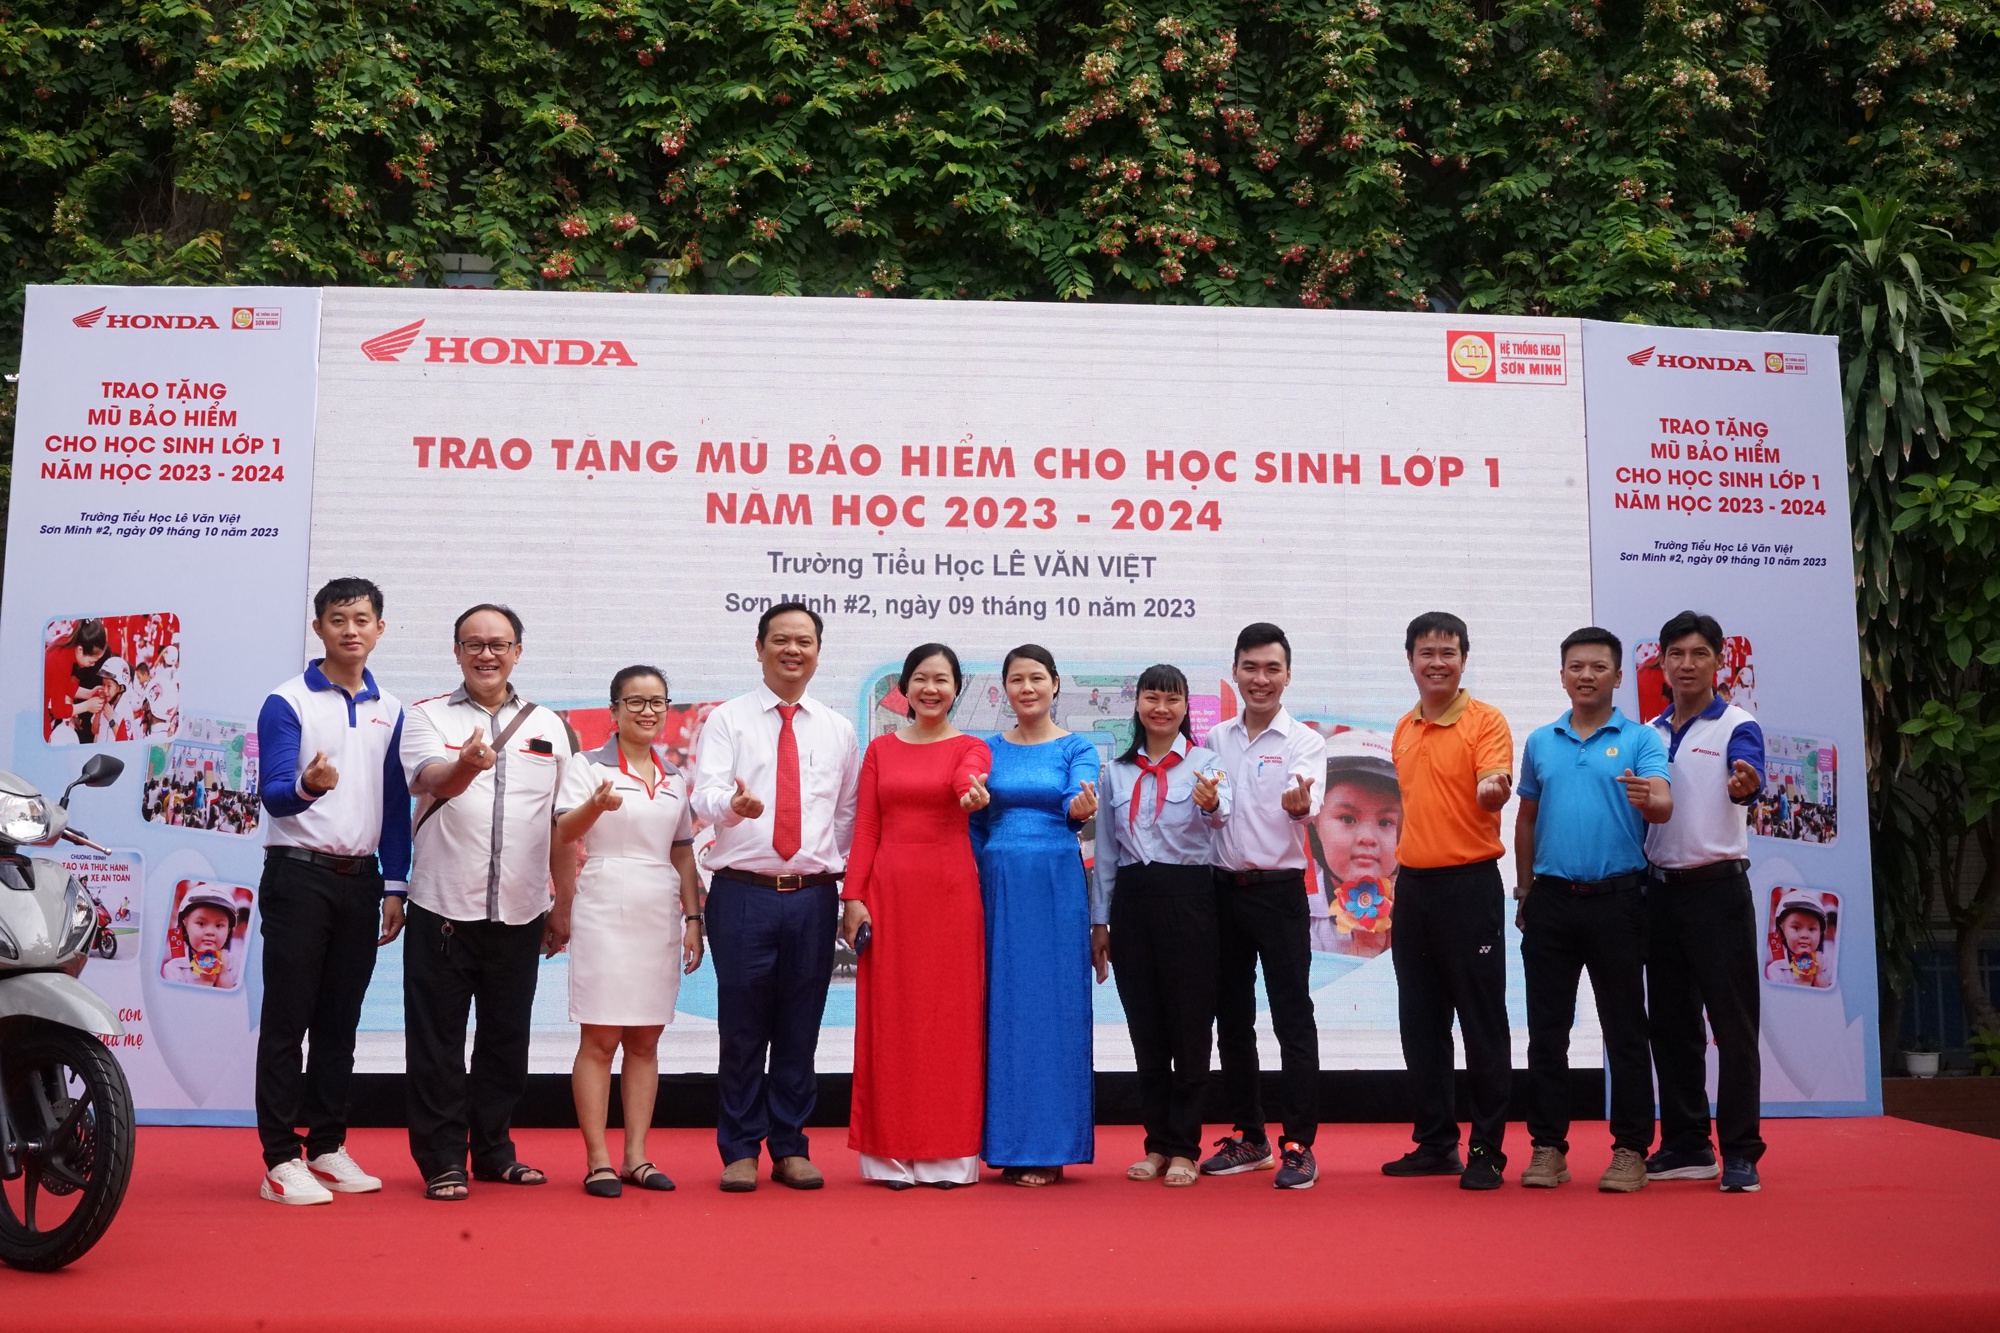 Trao tặng hàng trăm mũ bảo hiểm cho học sinh trường tiểu học Lê Văn Việt (TP Thủ Đức) - Ảnh 2.